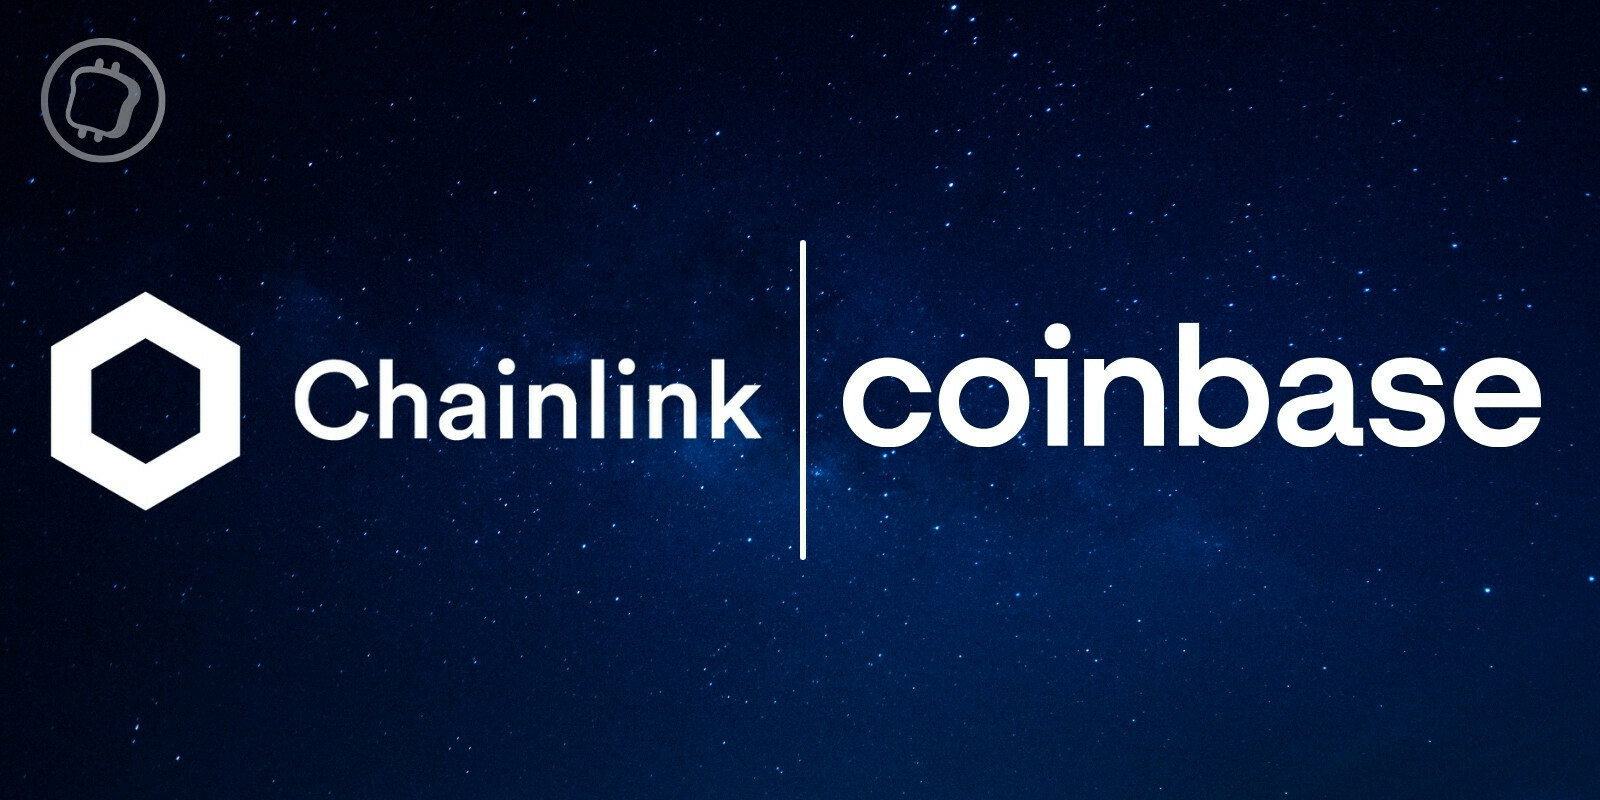 Chainlink (LINK) et Coinbase Cloud annoncent la sortie d'un oracle dédié au floor price des NFT